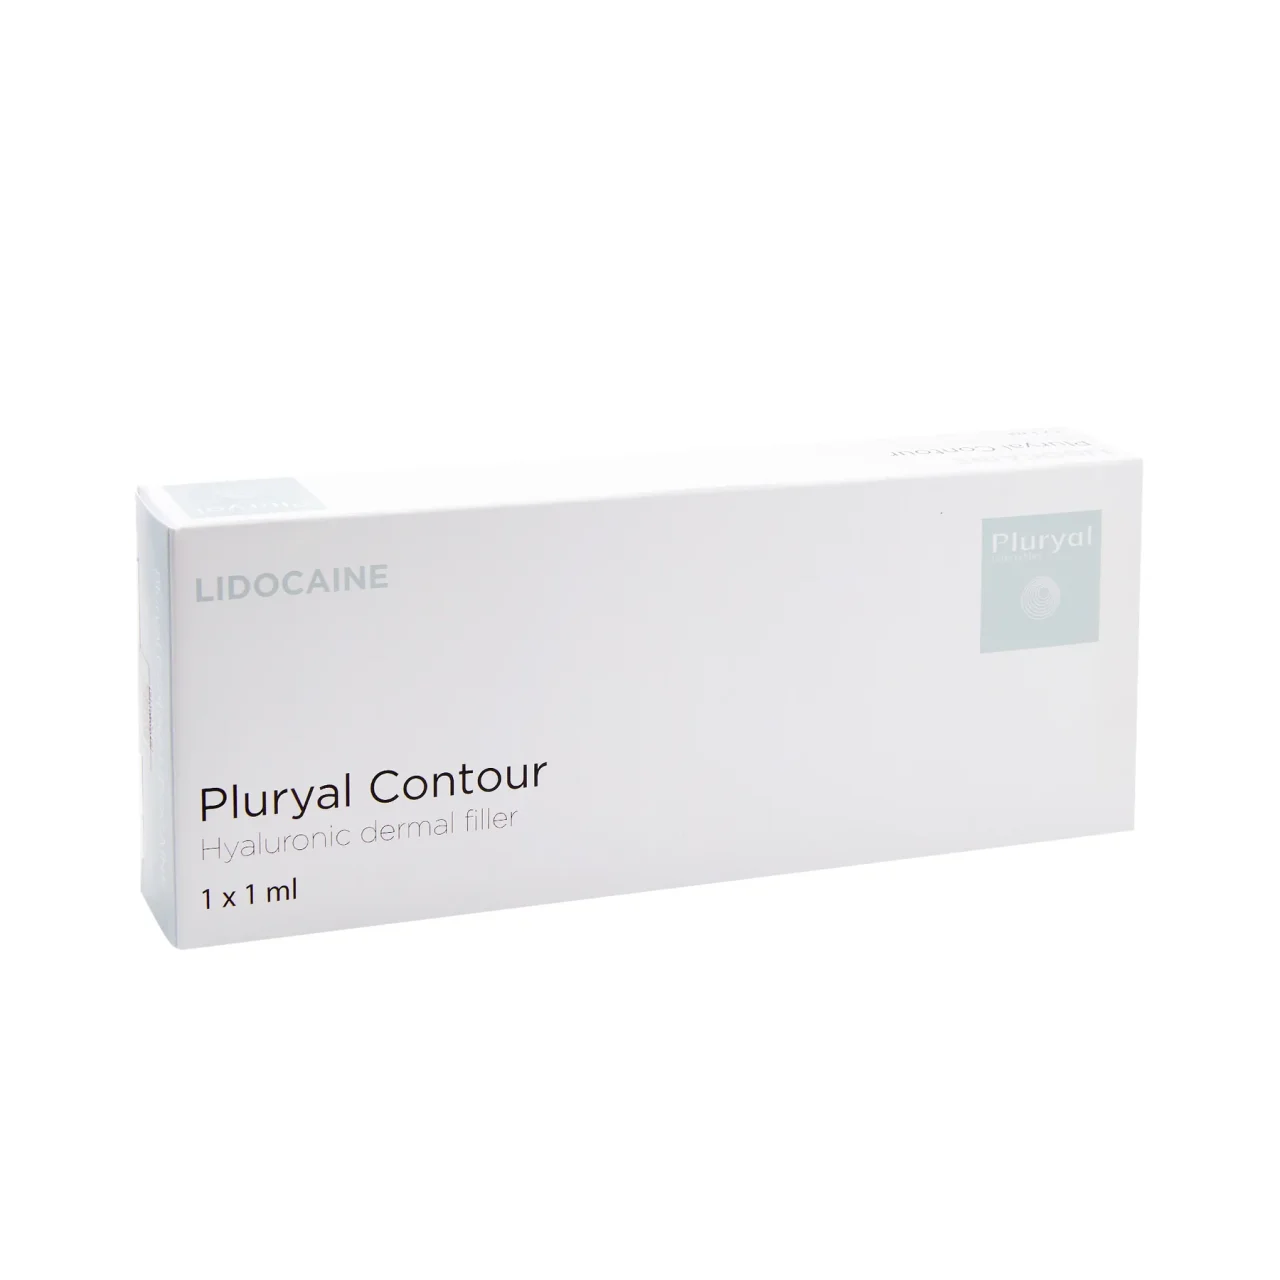 Pluryal contour